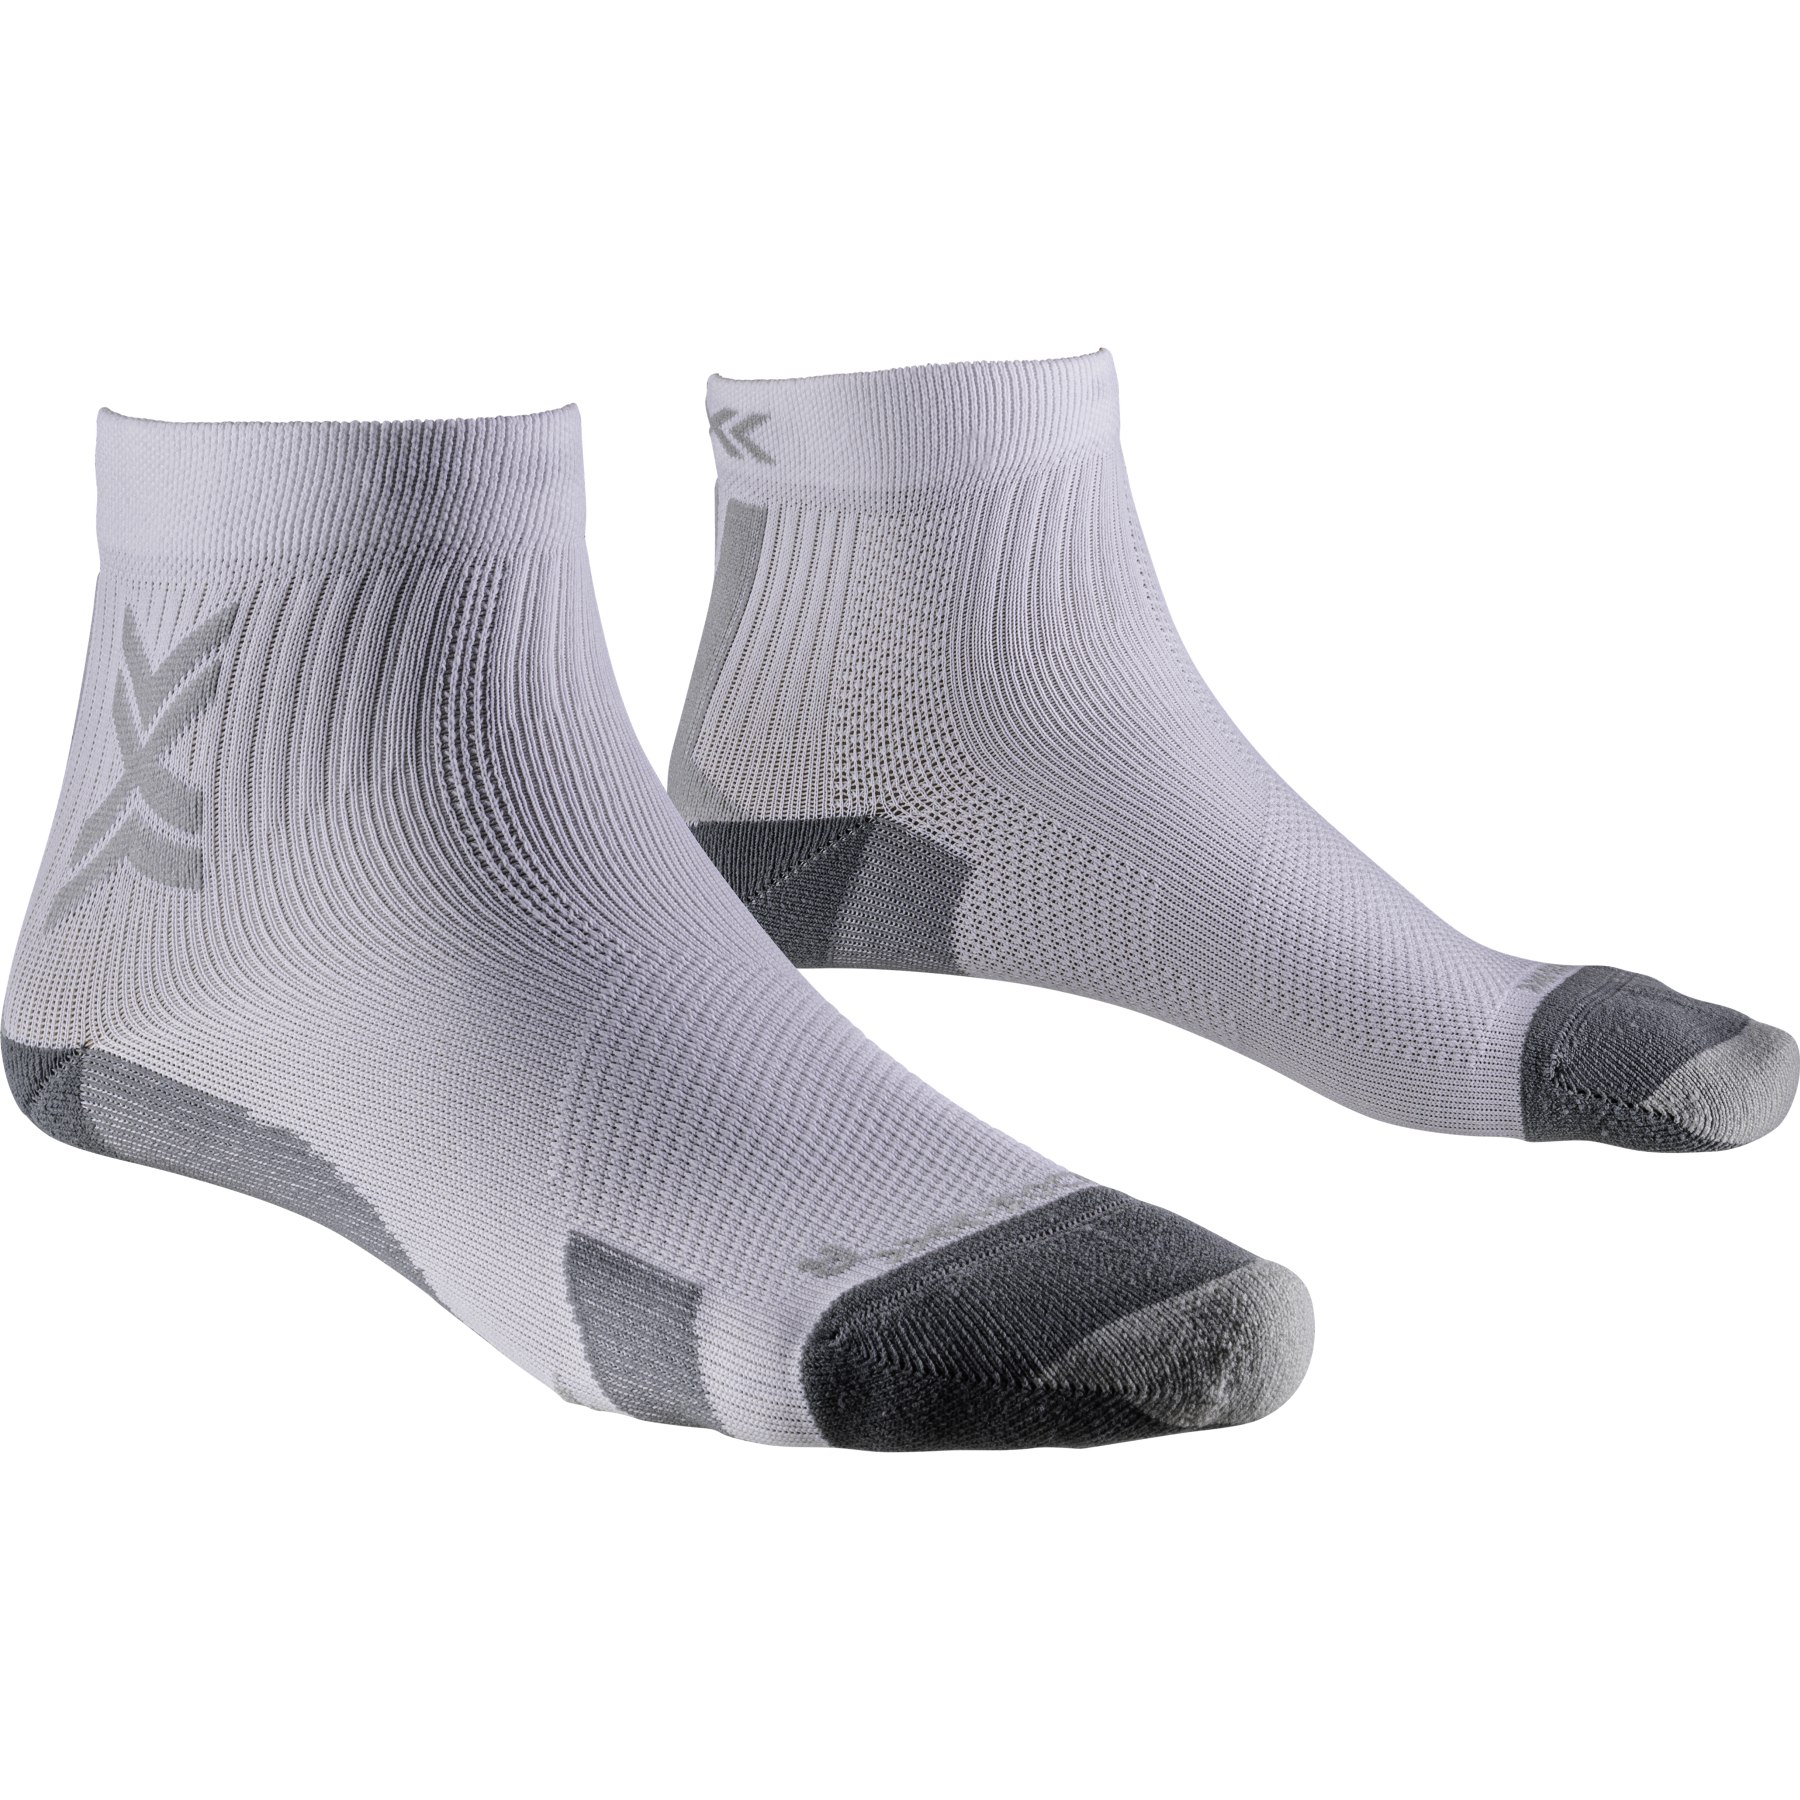 Produktbild von X-Socks Run Discover Ankle Laufsocken Herren - arctic white/pearl grey